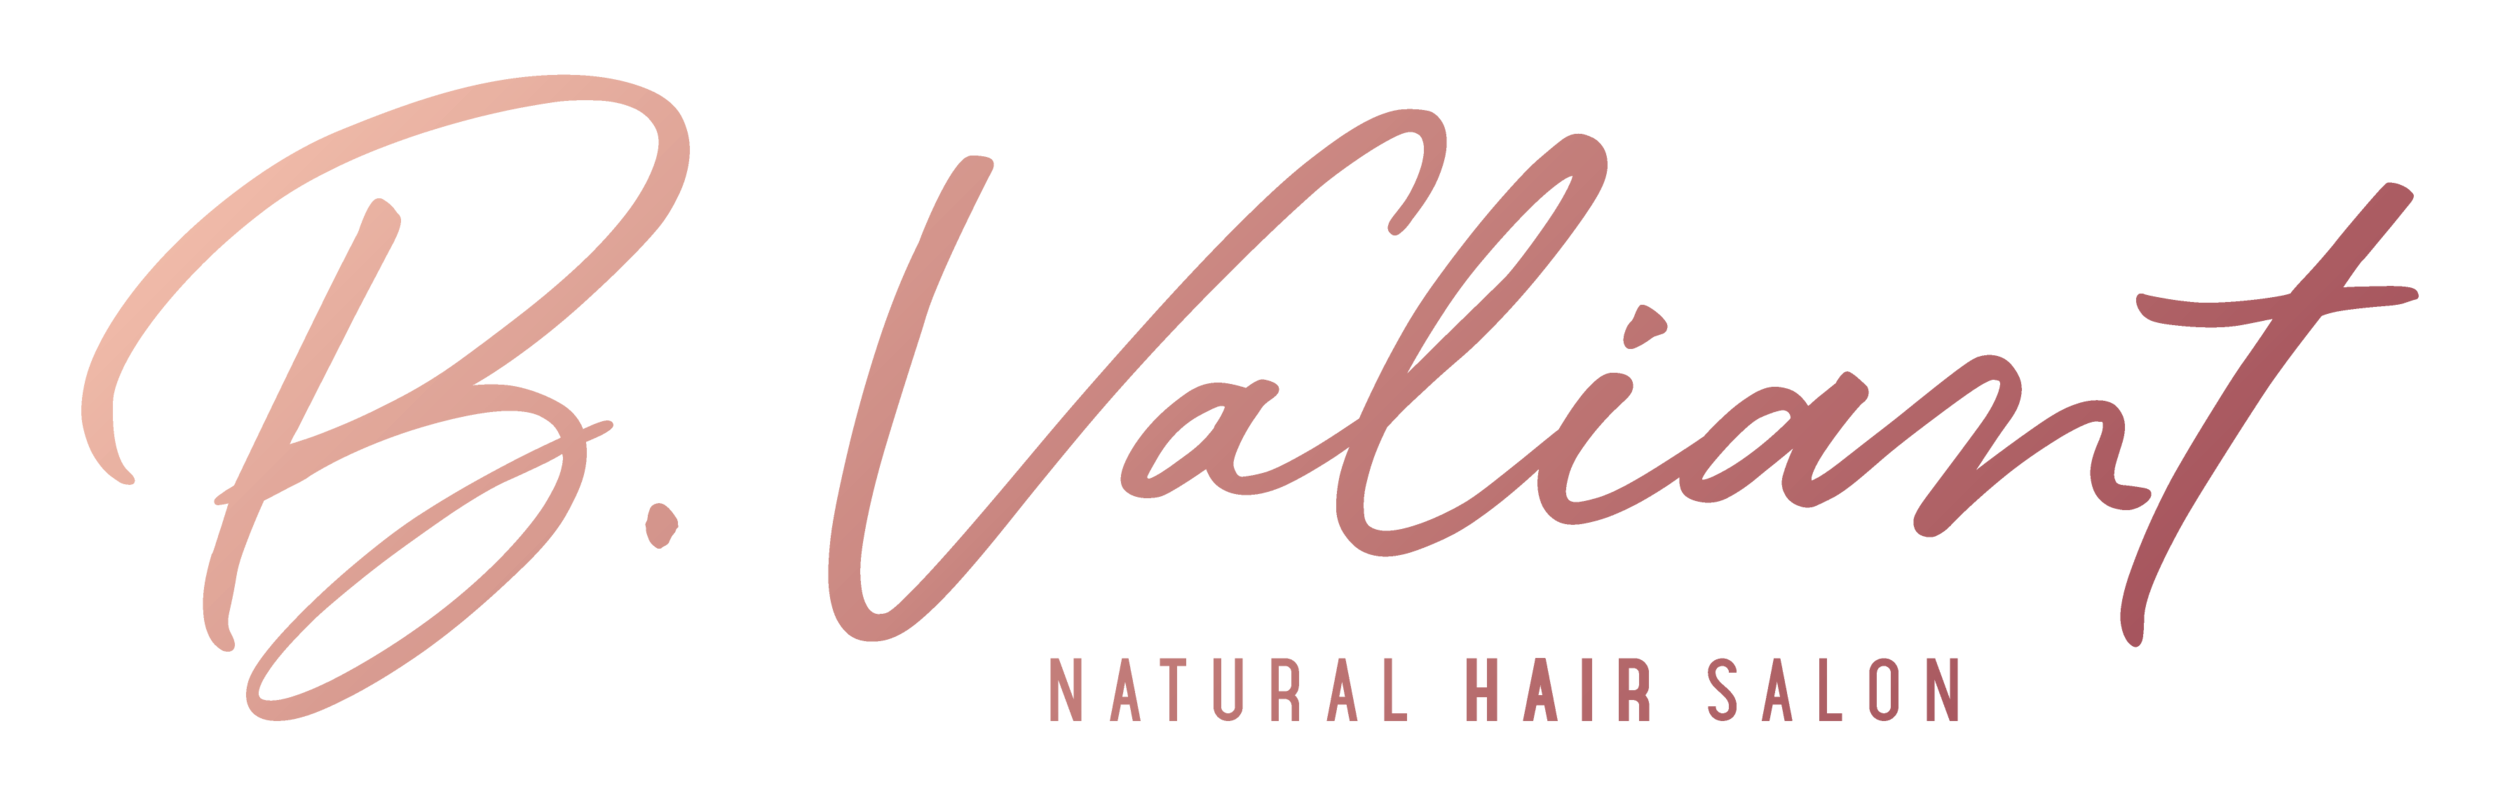 B. Valiant Hair Salon